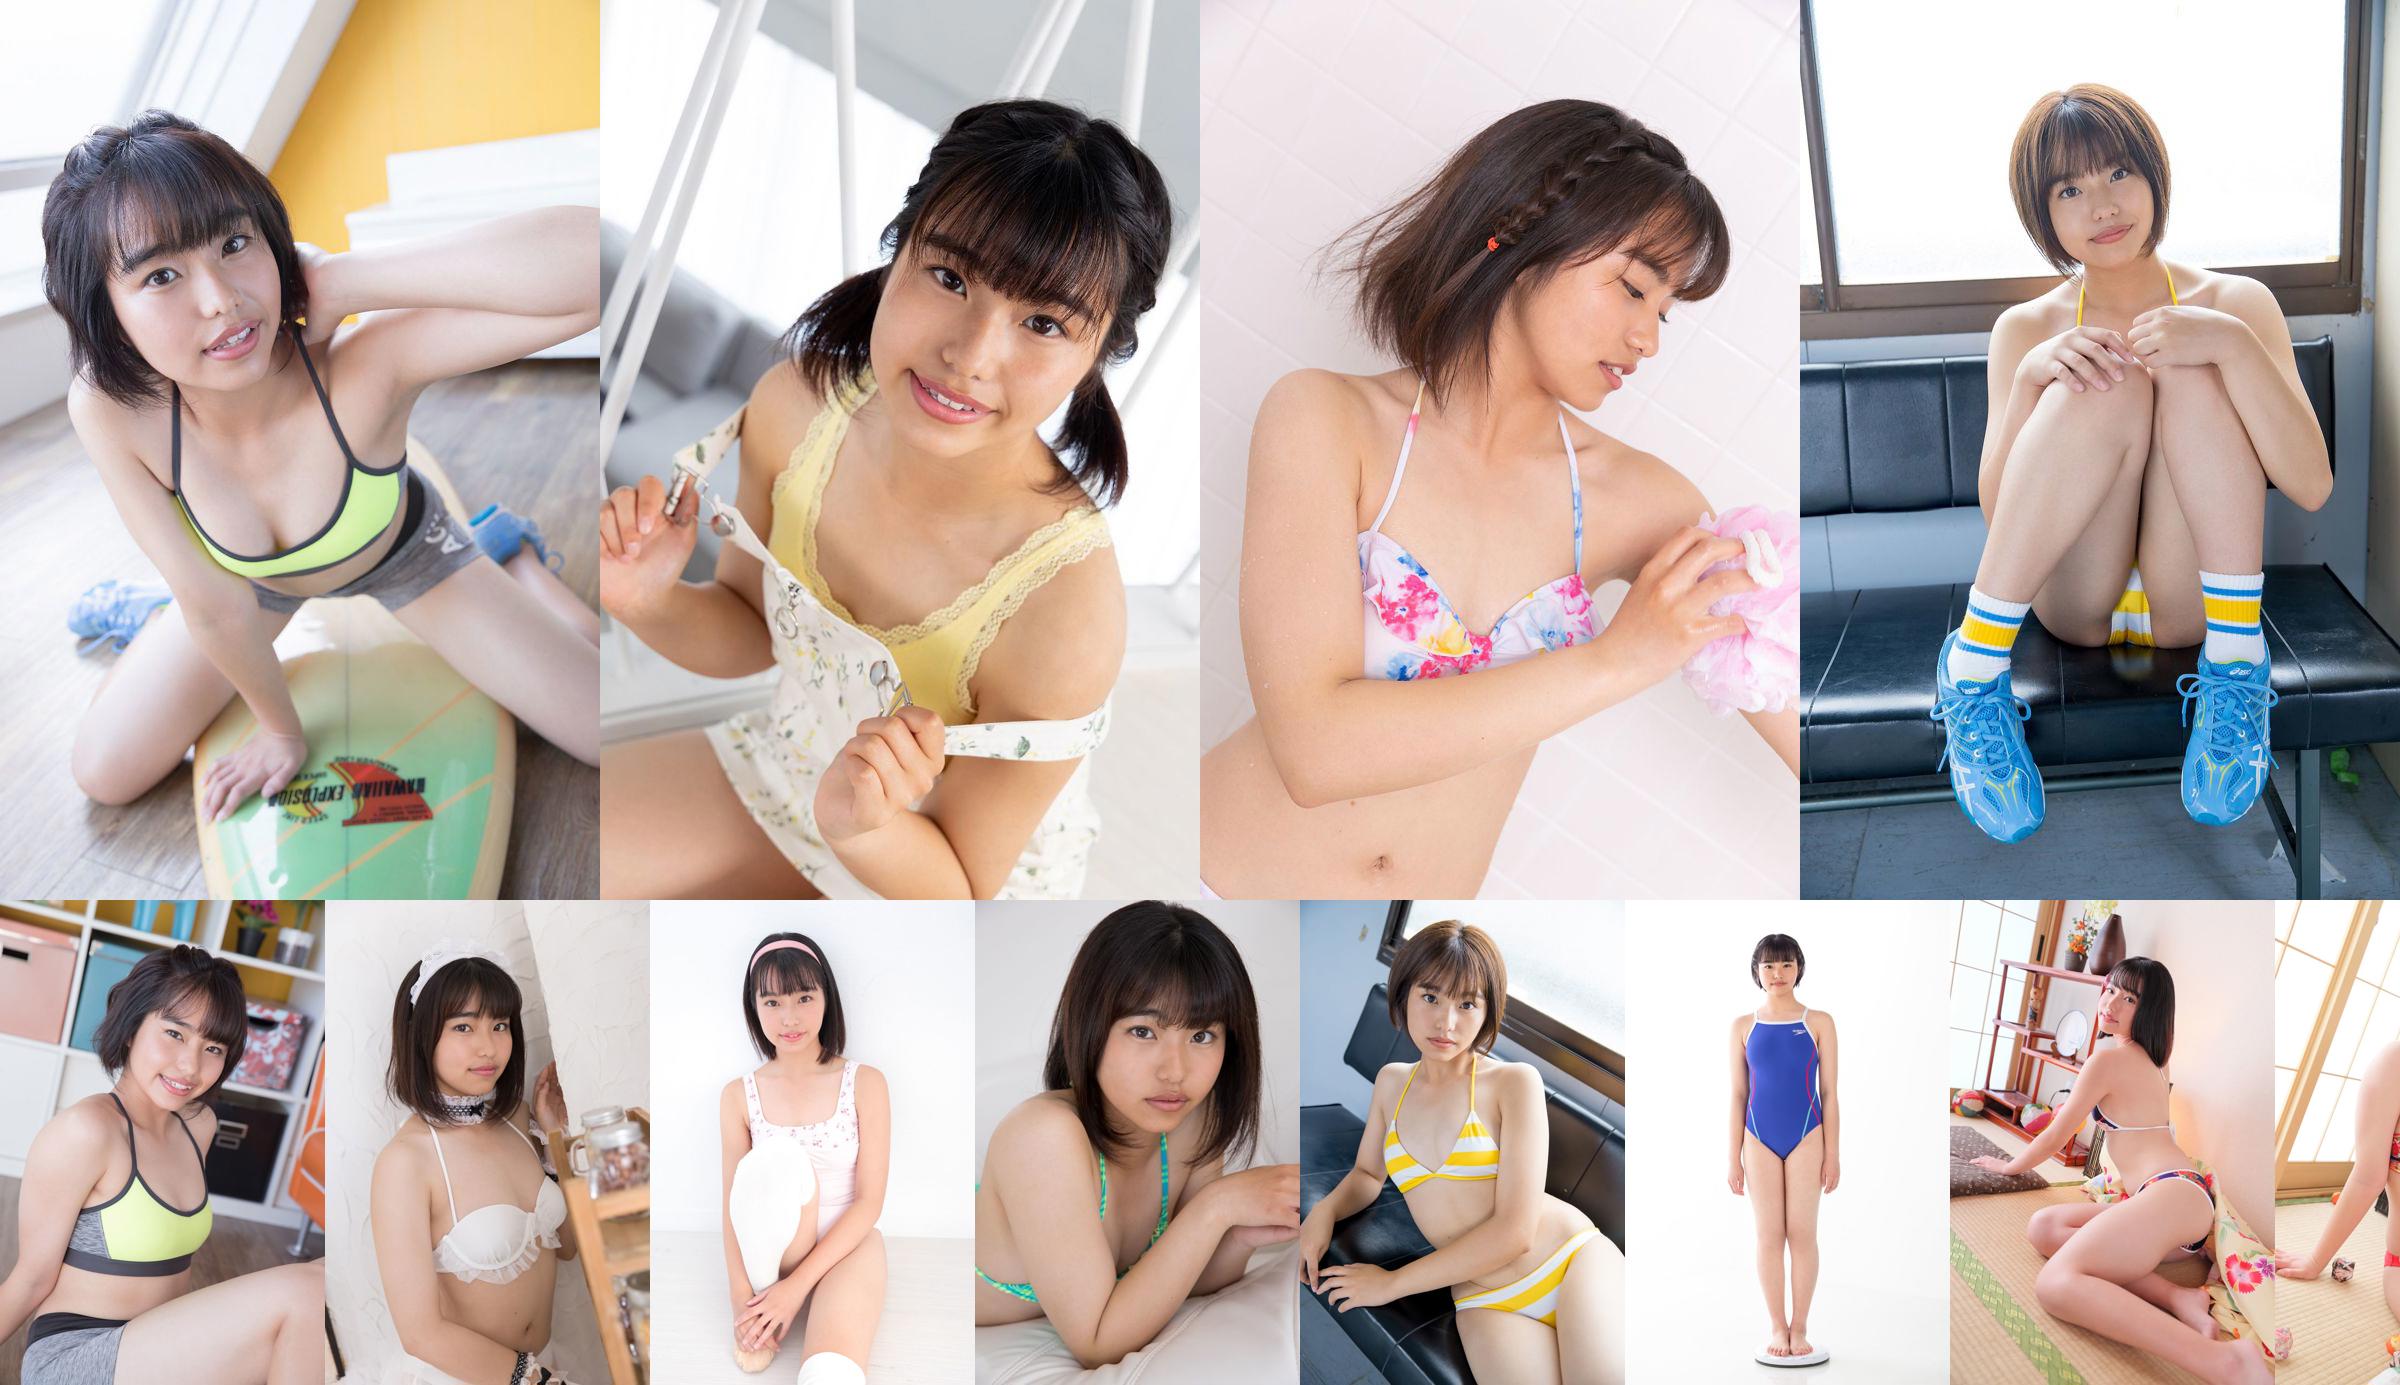 [Minisuka.tv] Saya Asahina さや - Regular Gallery 3.2 No.7a6765 Página 1